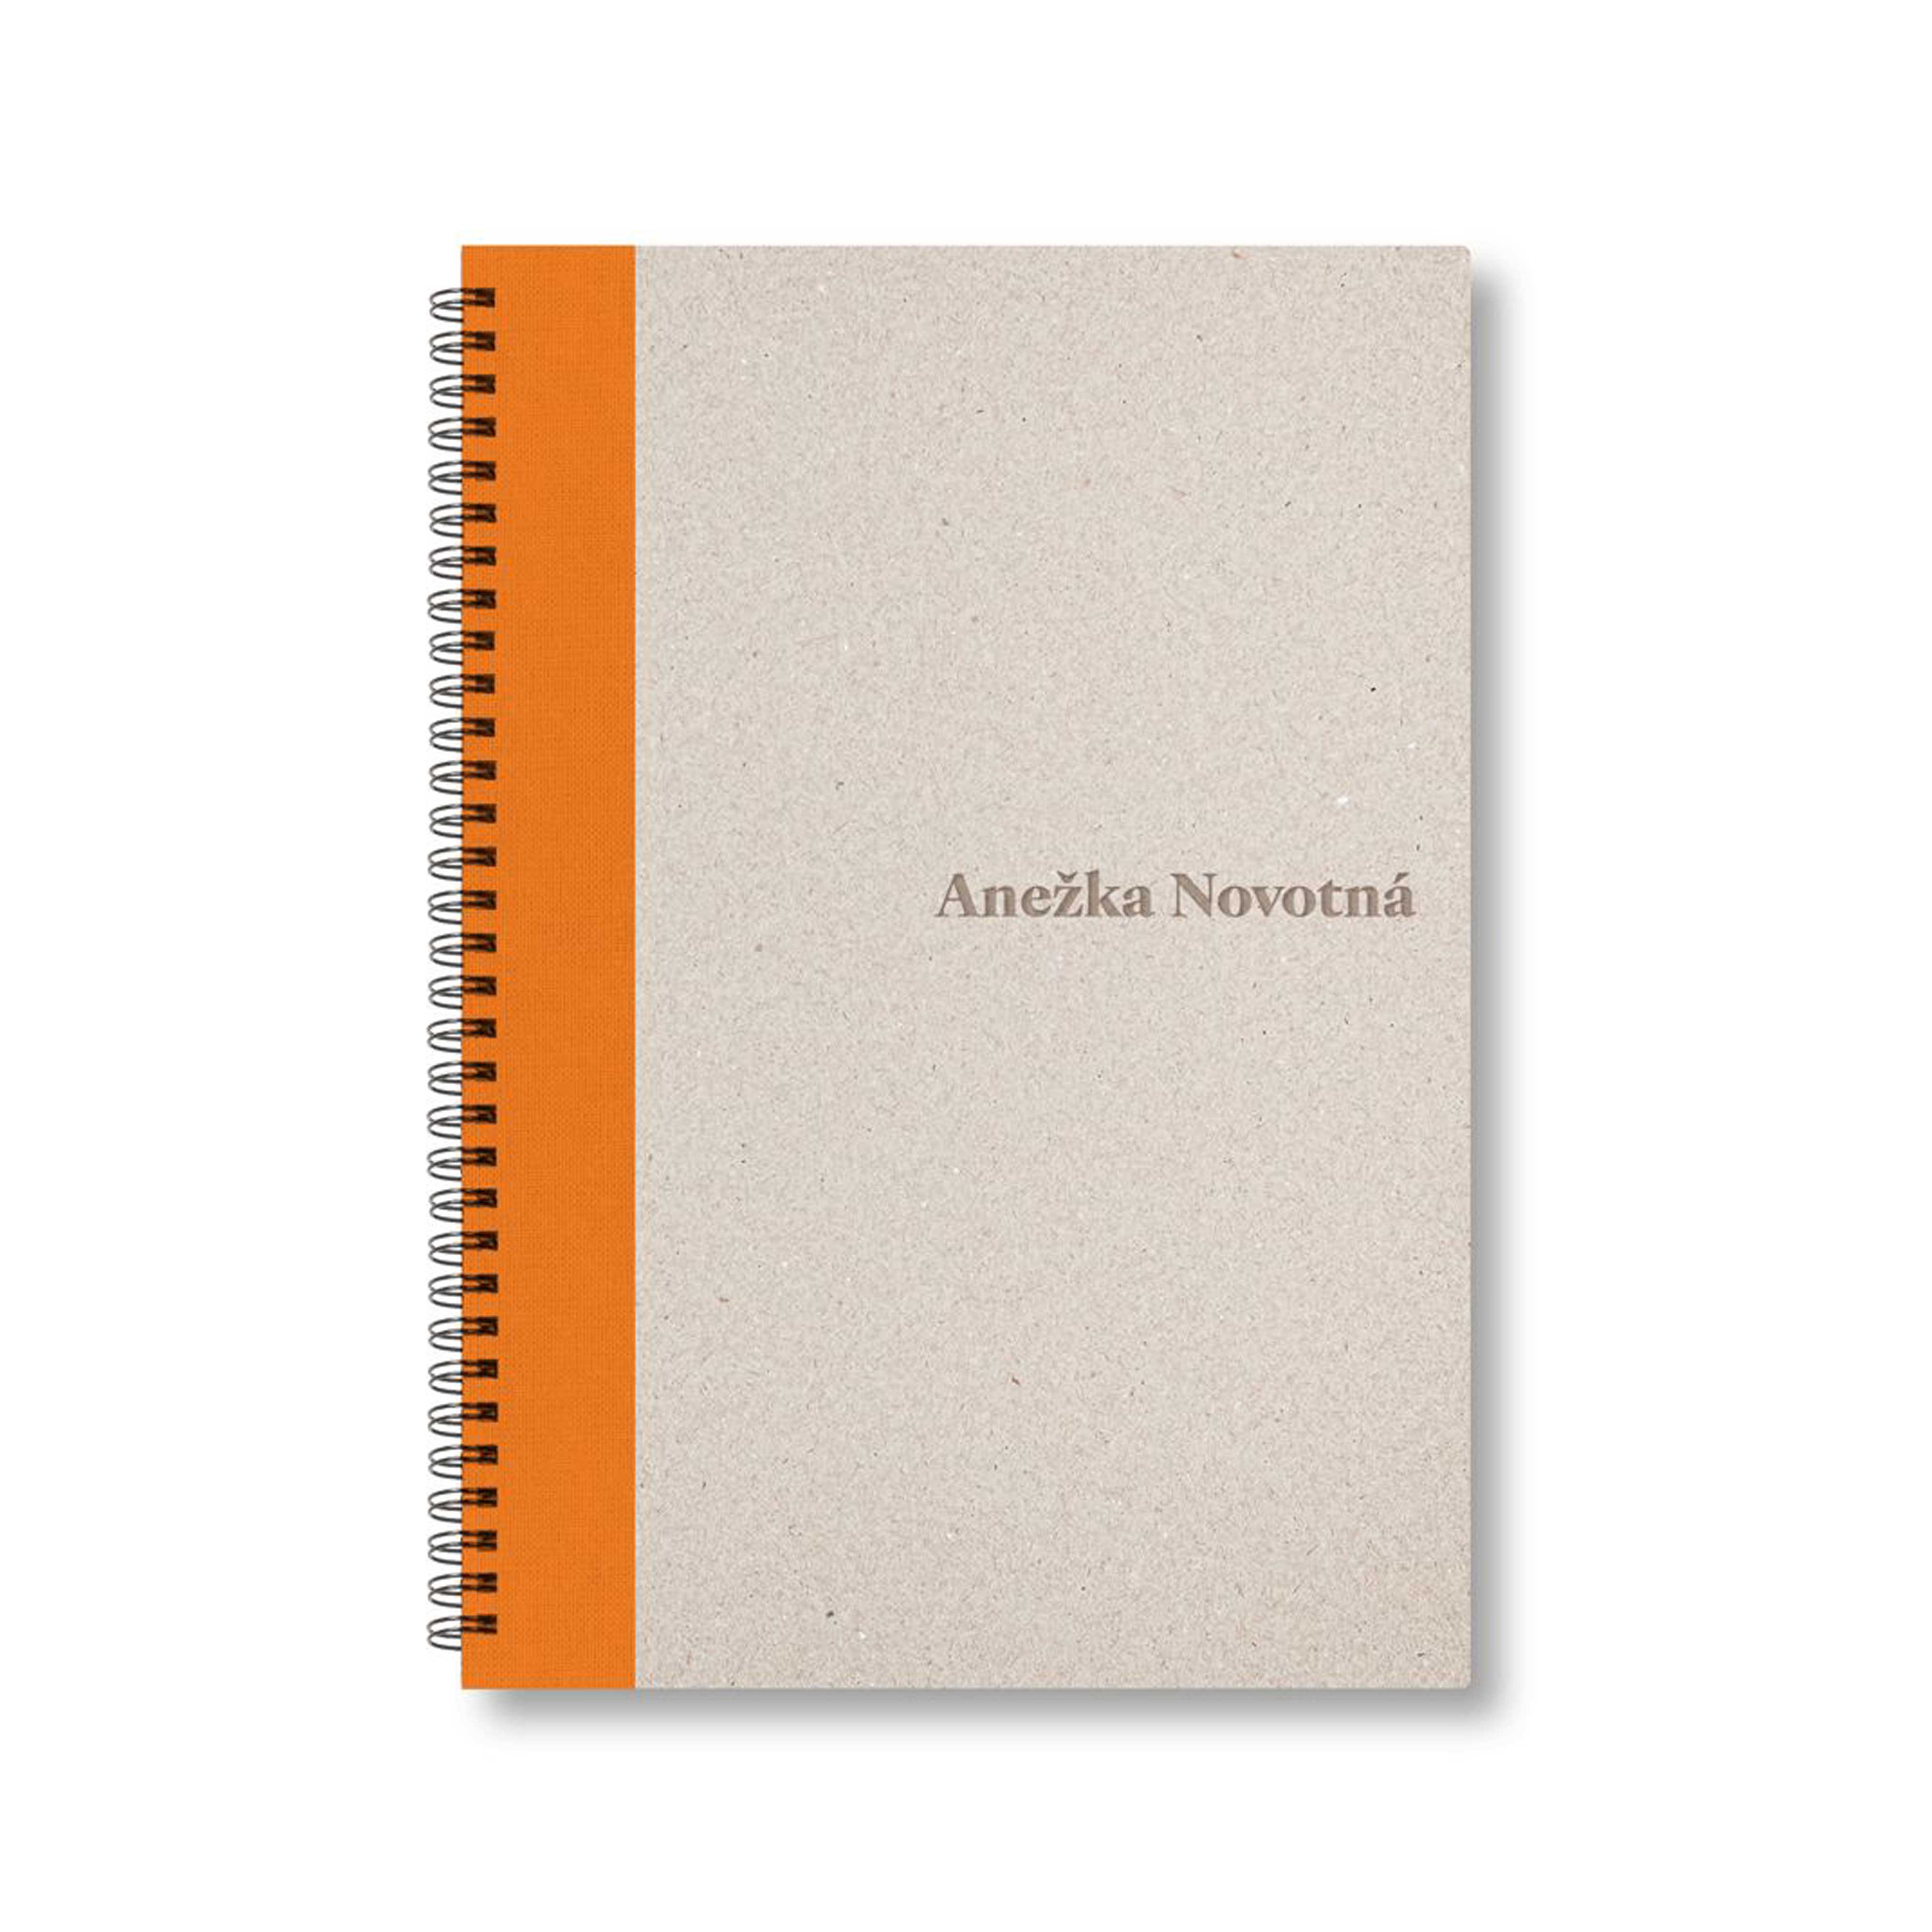 BOBO Zápisník, B5, čistý, oranžový, konfiguruj si obálku